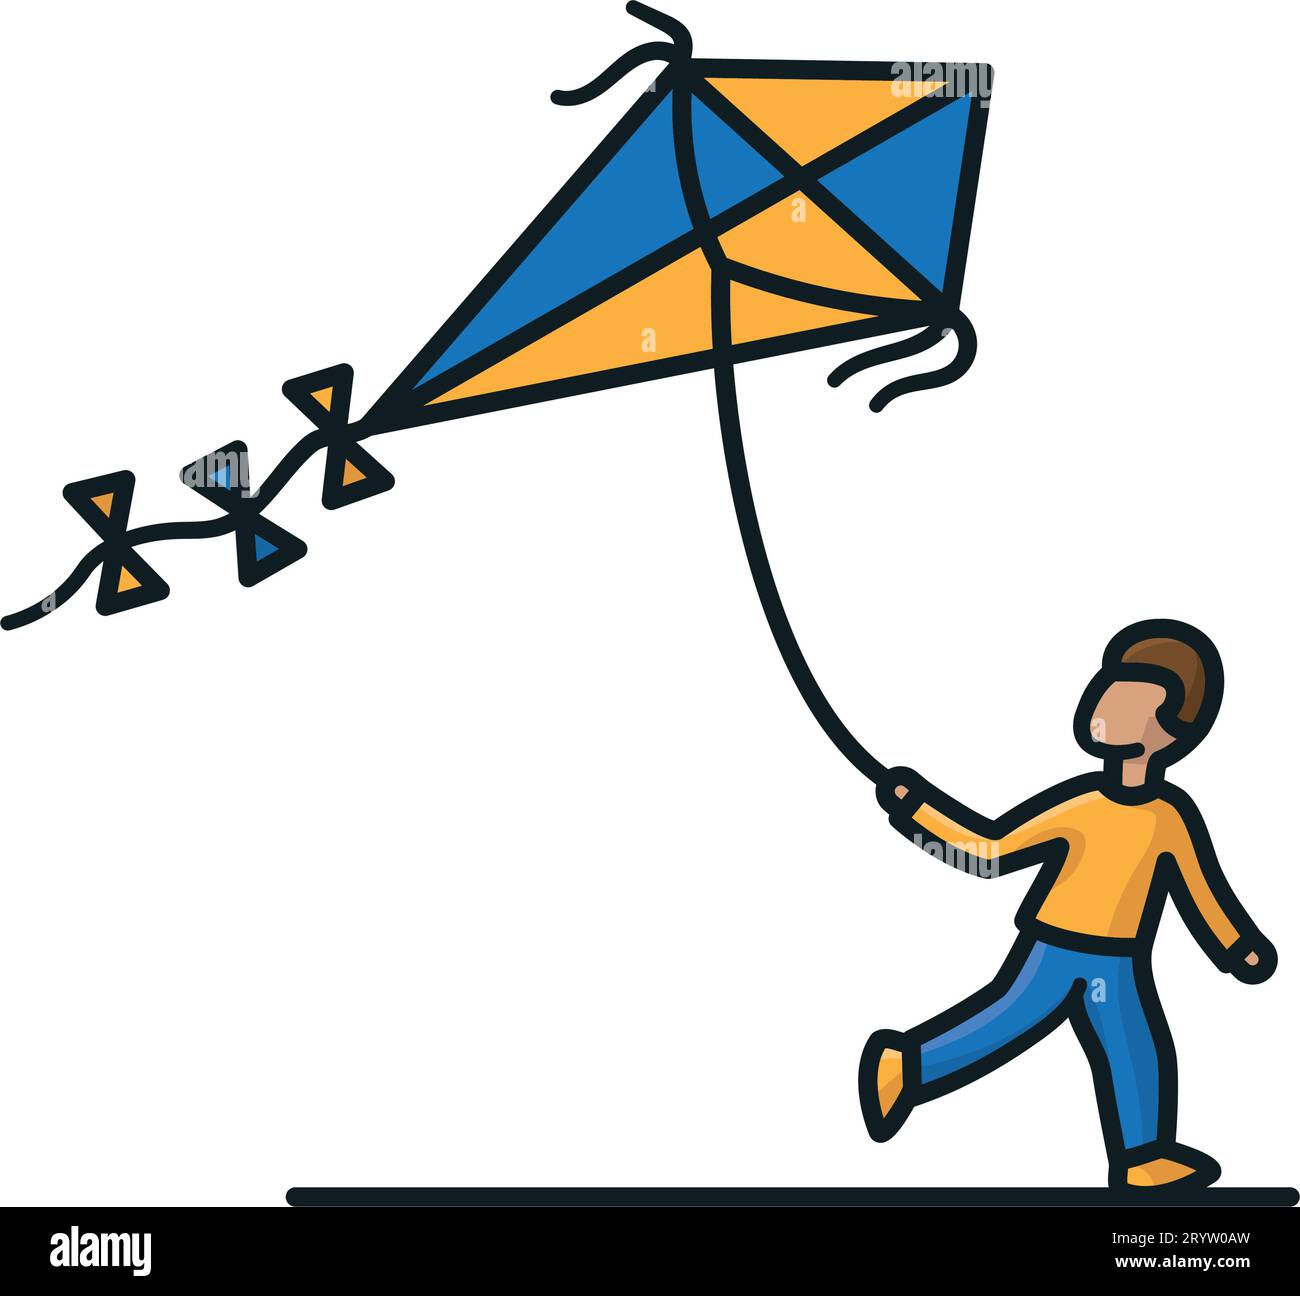 Garçon volant une illustration vectorielle isolée de cerf-volant pour la Journée nationale de vol de cerf-volant le 8 février Illustration de Vecteur